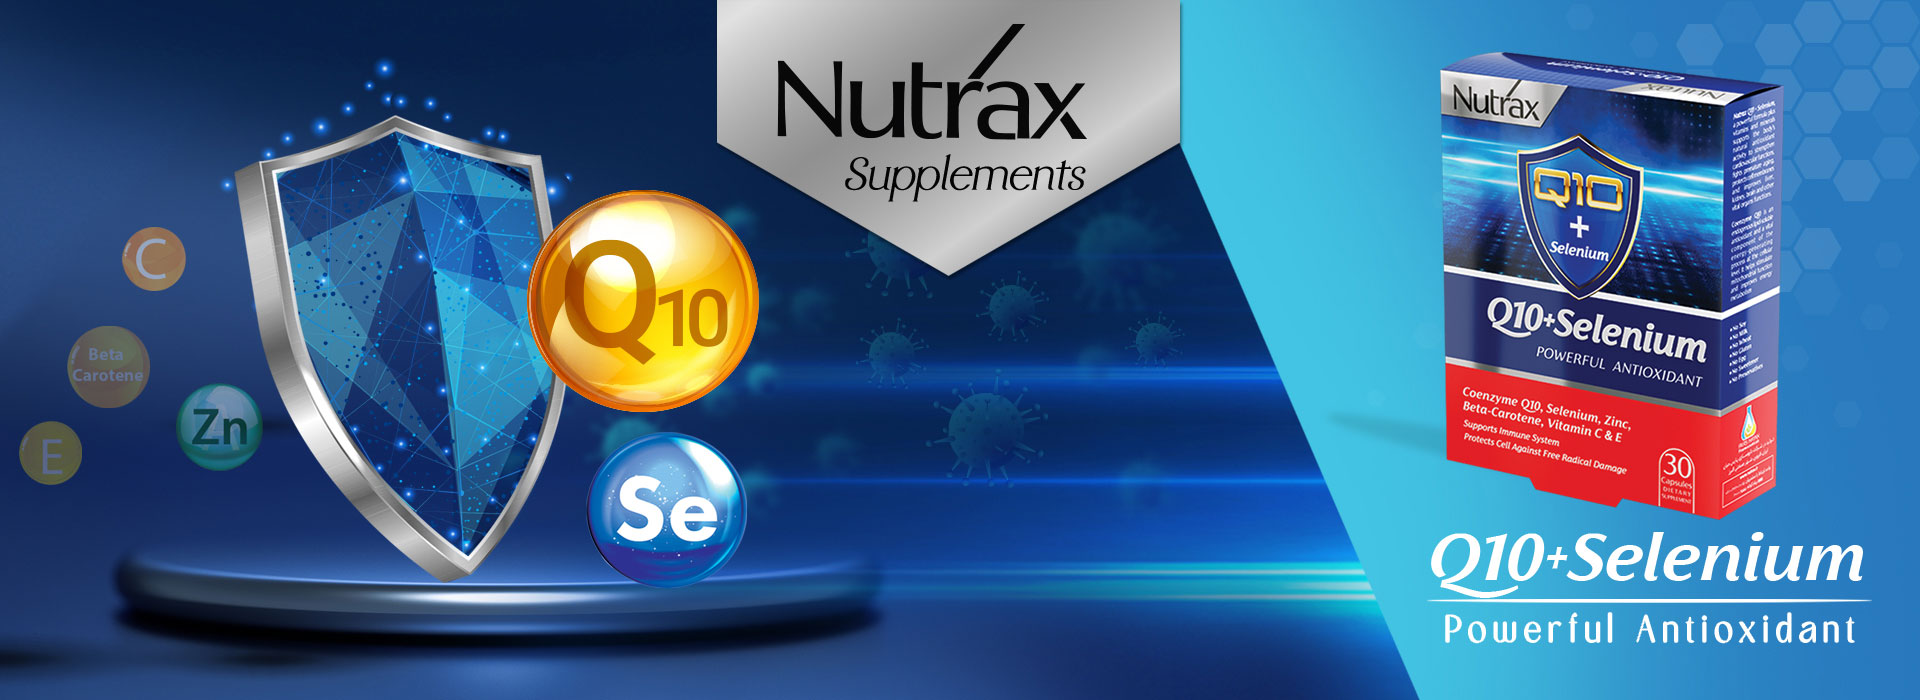 nutrax.ir-banner-q10plus-selenium